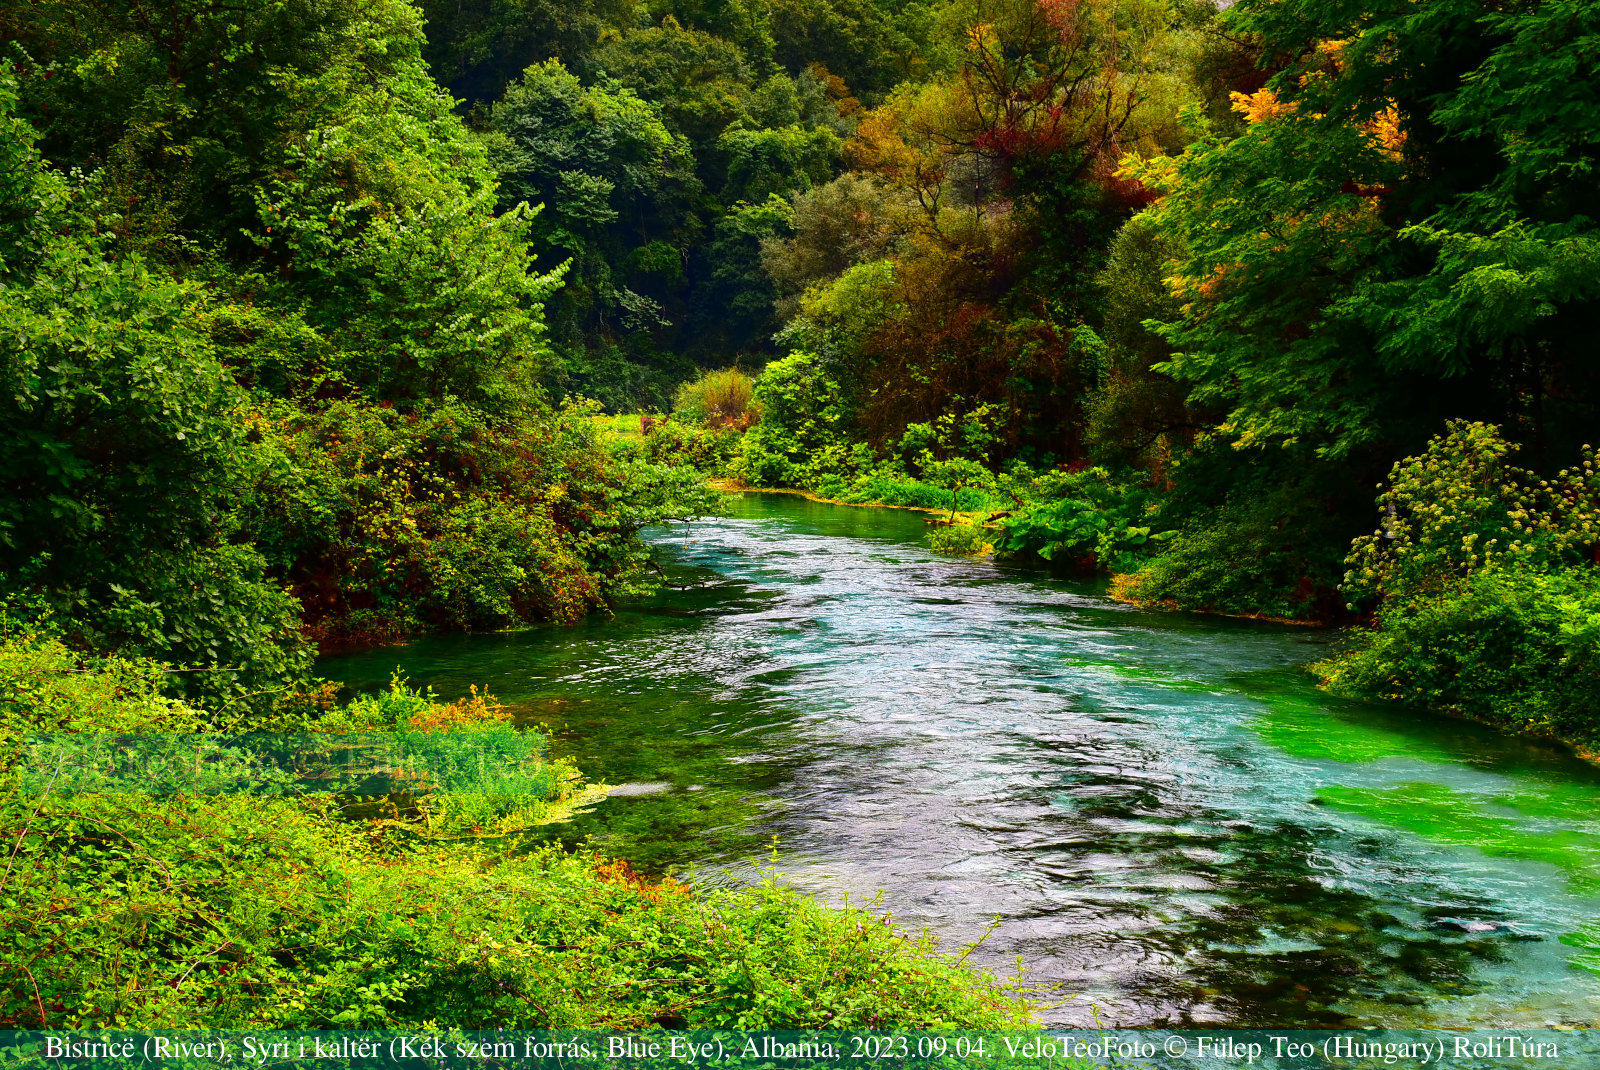 Bistrica folyó, a Kék szem forrás (Syri i kaltër, Blue Eye) alatt, Albánia.